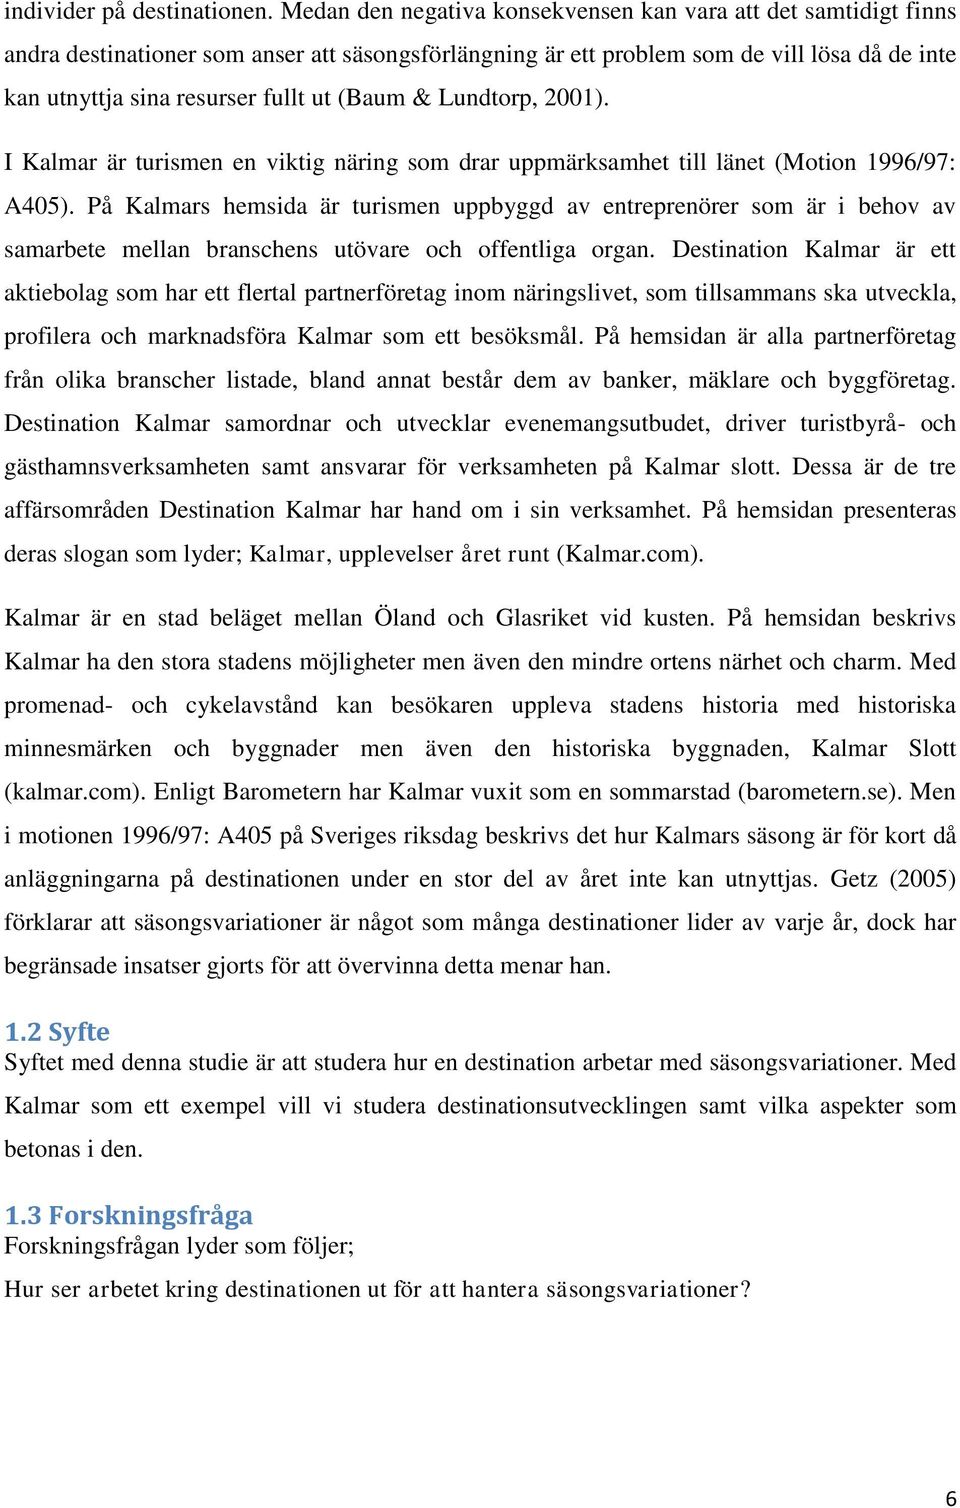 (Baum & Lundtorp, 2001). I Kalmar är turismen en viktig näring som drar uppmärksamhet till länet (Motion 1996/97: A405).